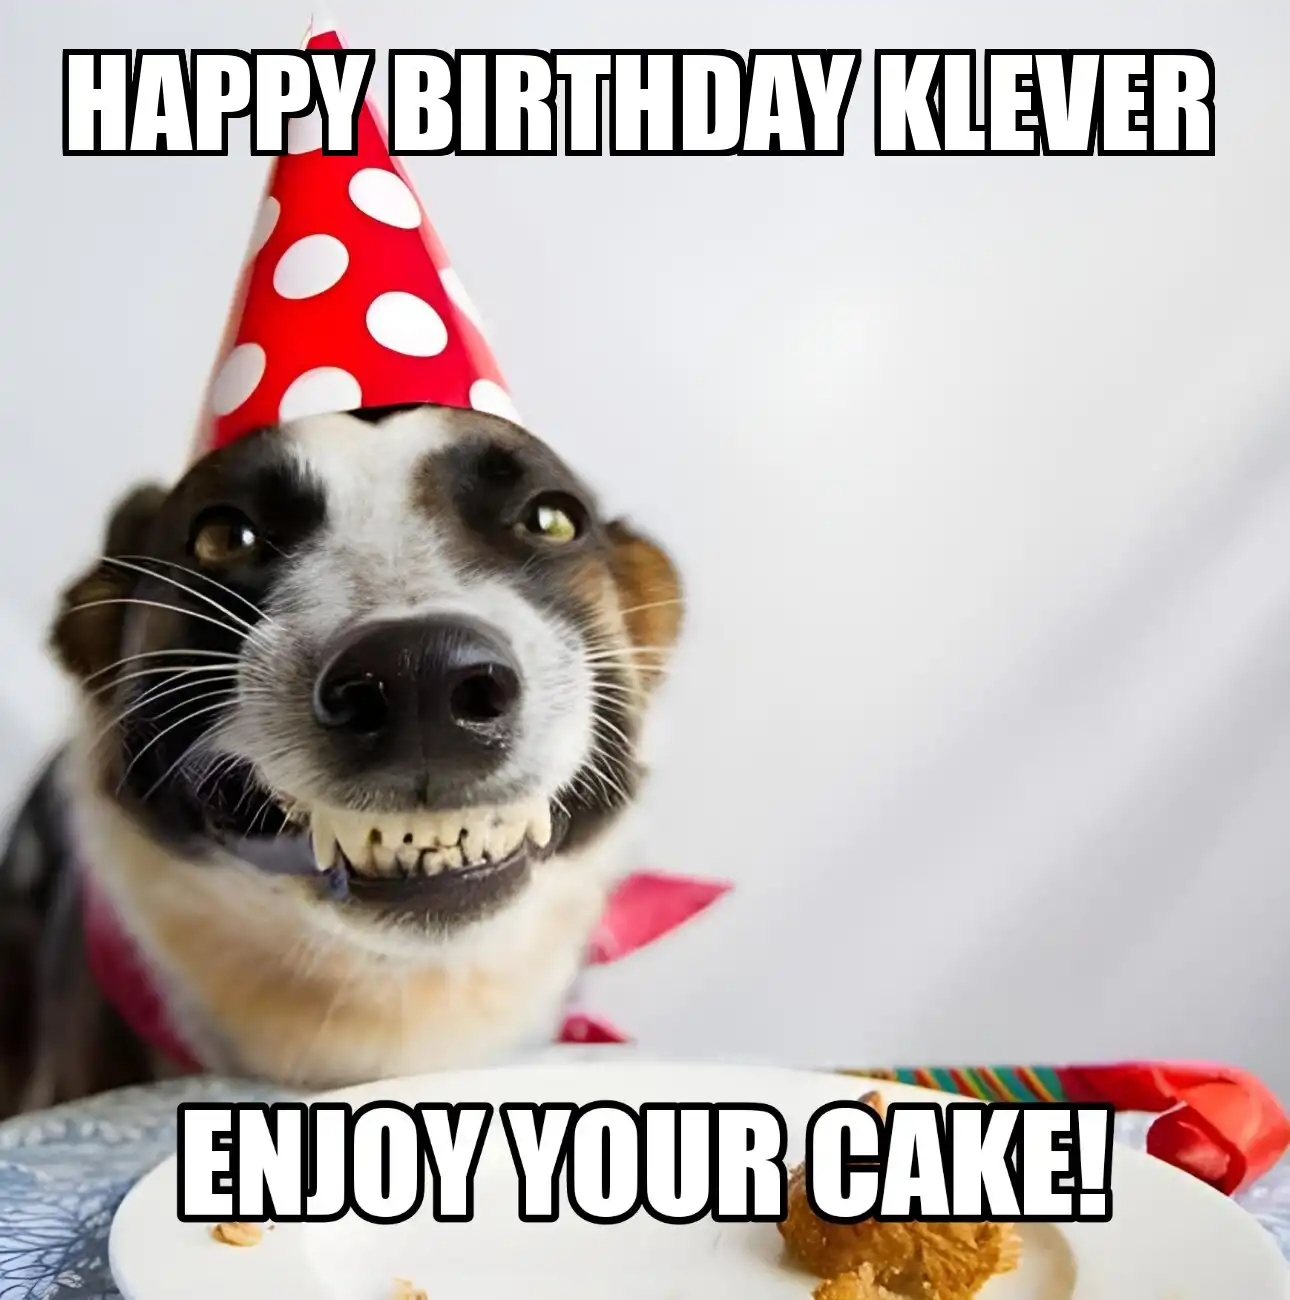 Happy Birthday Klever Enjoy Your Cake Dog Meme